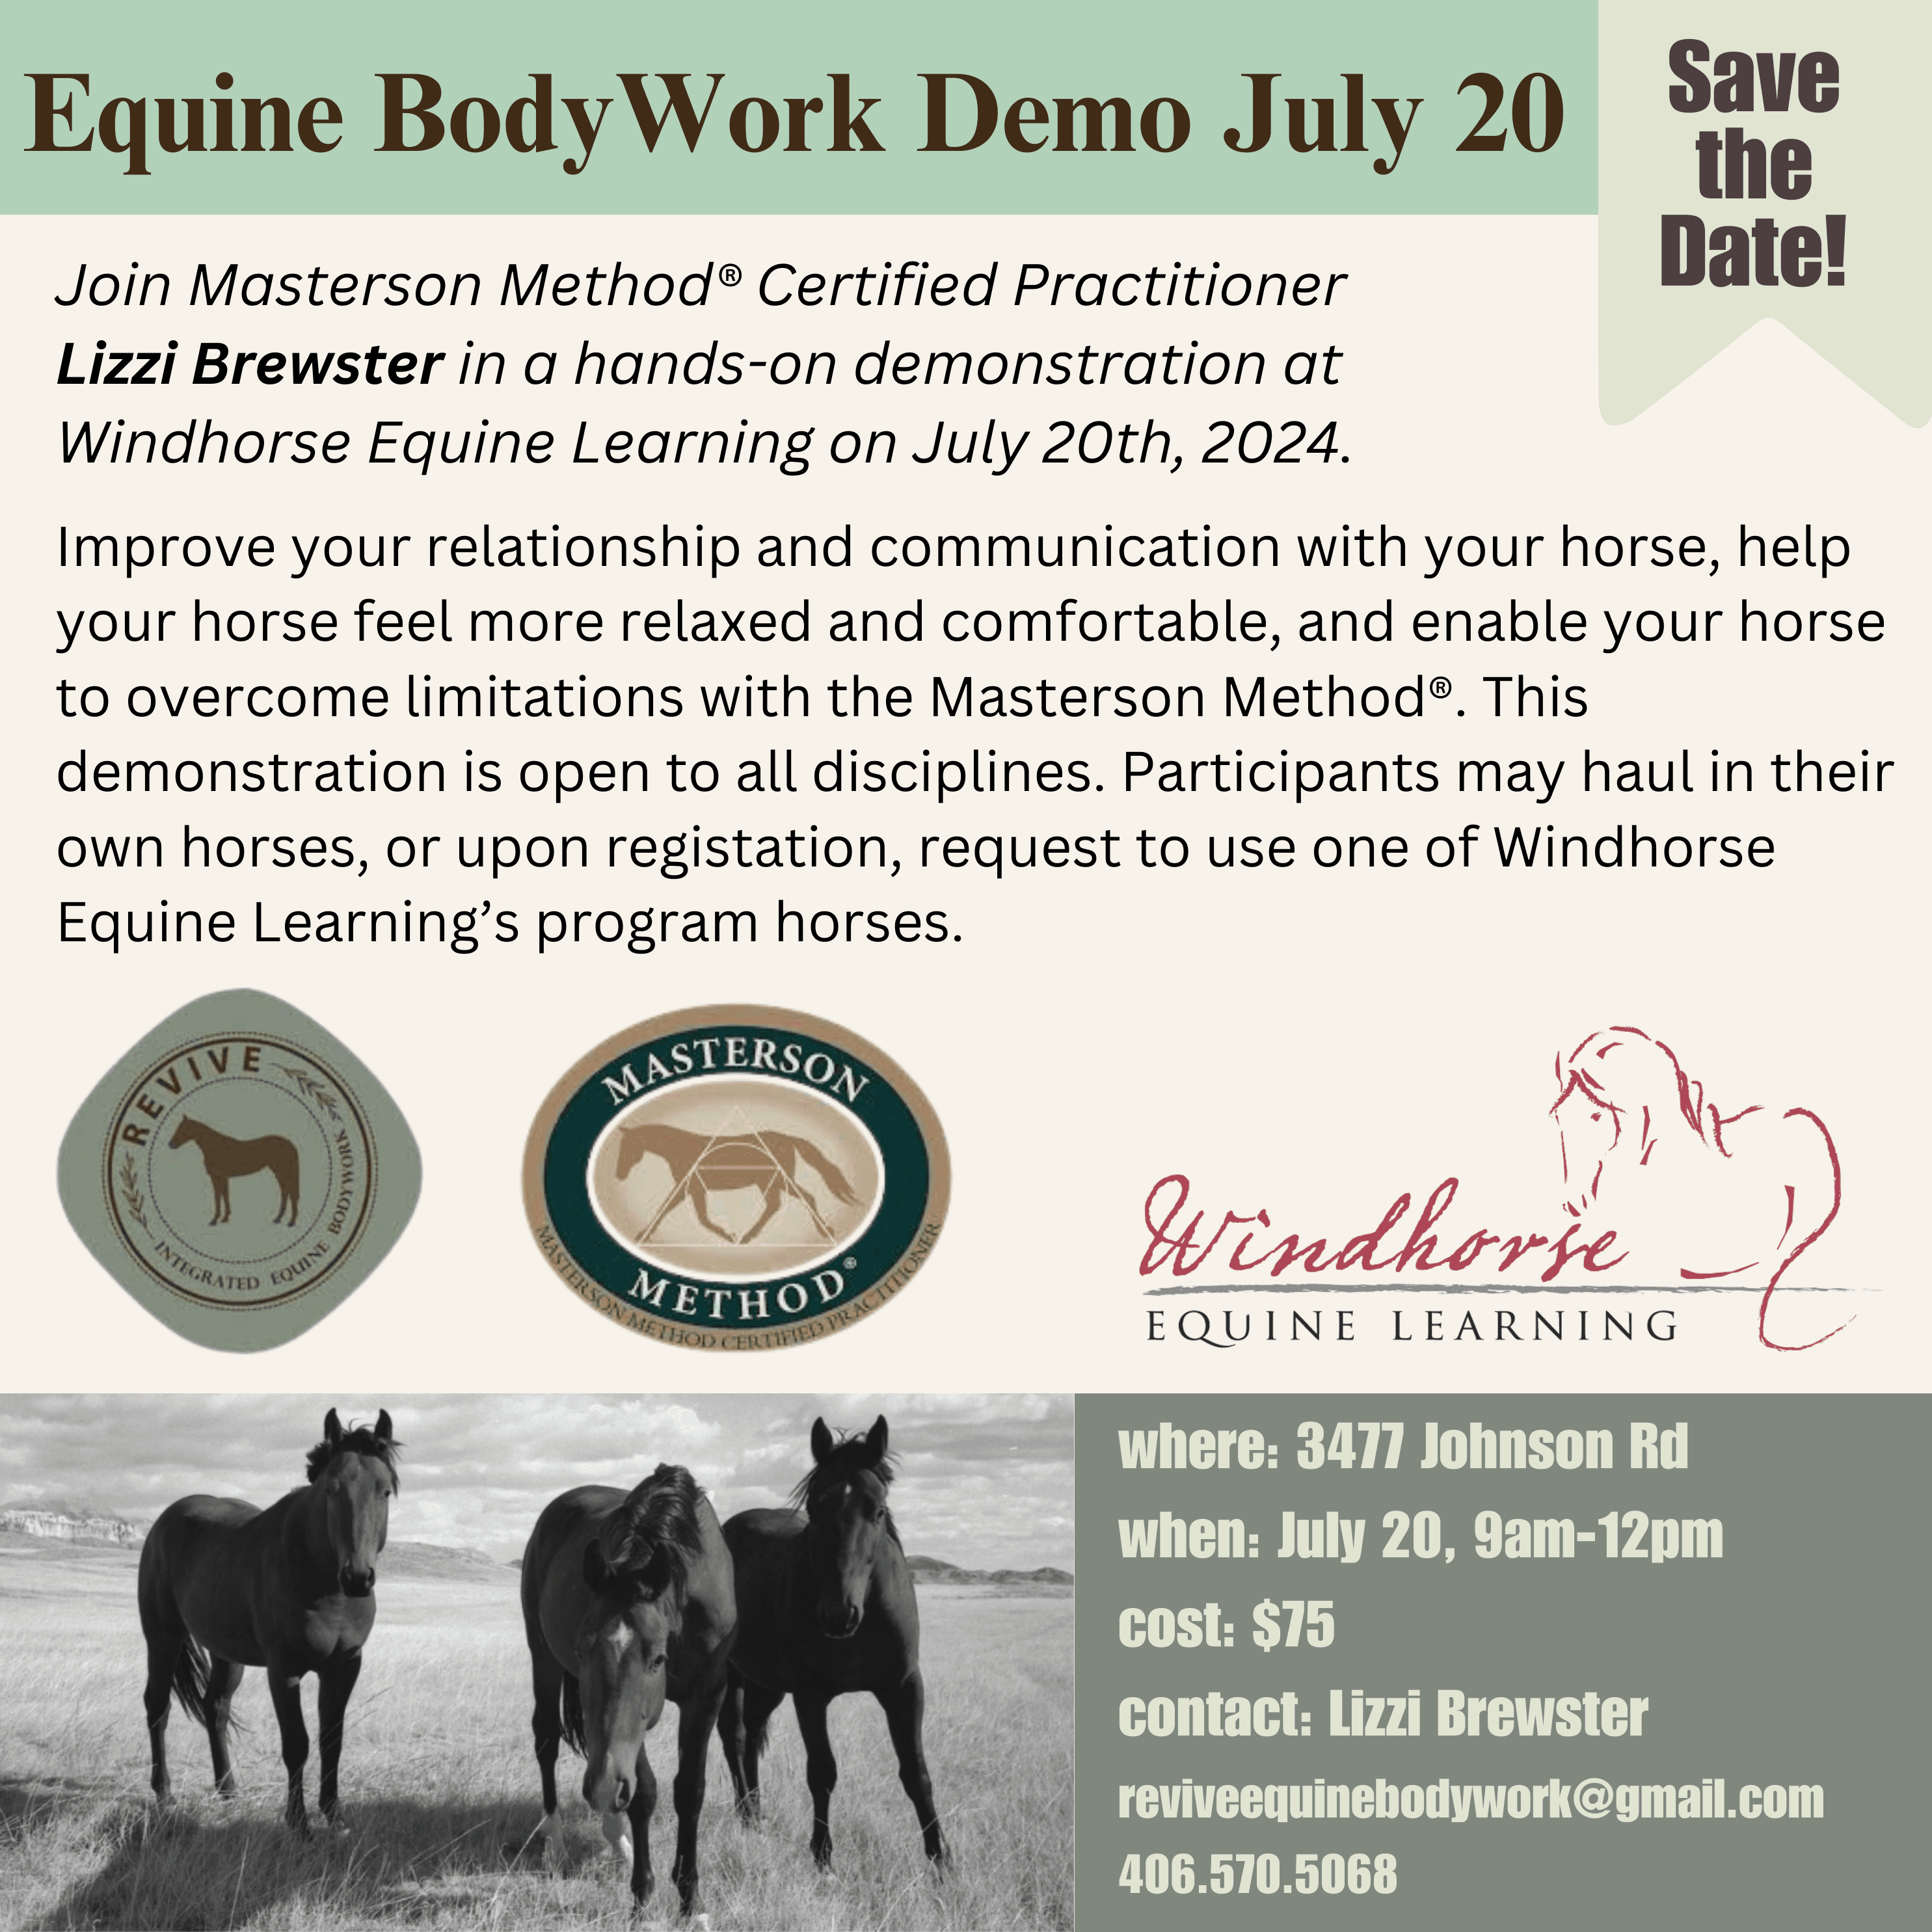 Windhorse to host Equine Bodywork Demonstration July 20